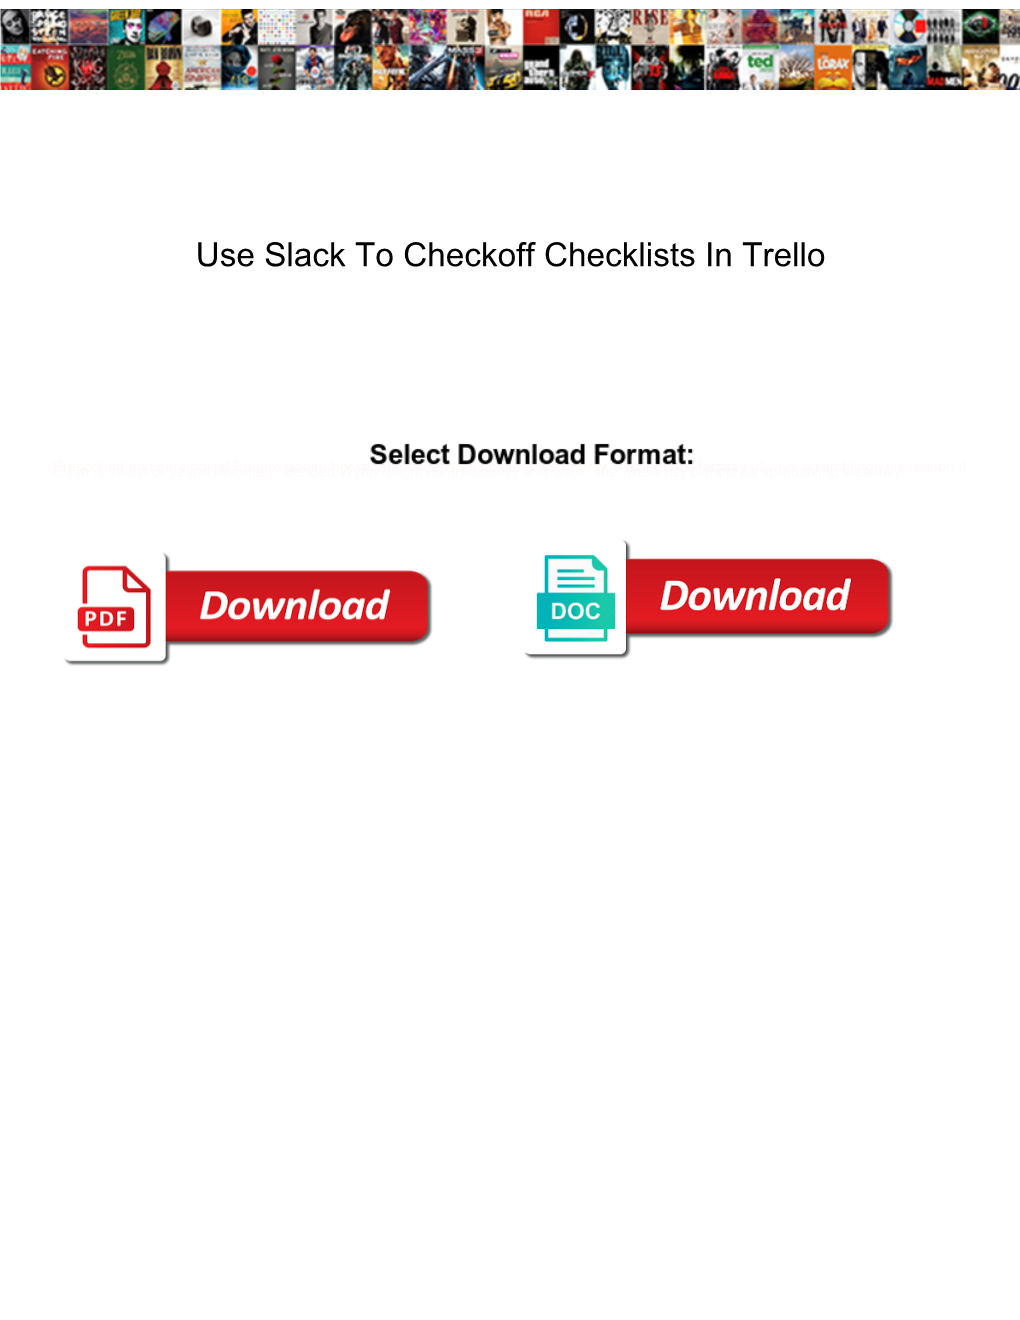 Use Slack to Checkoff Checklists in Trello